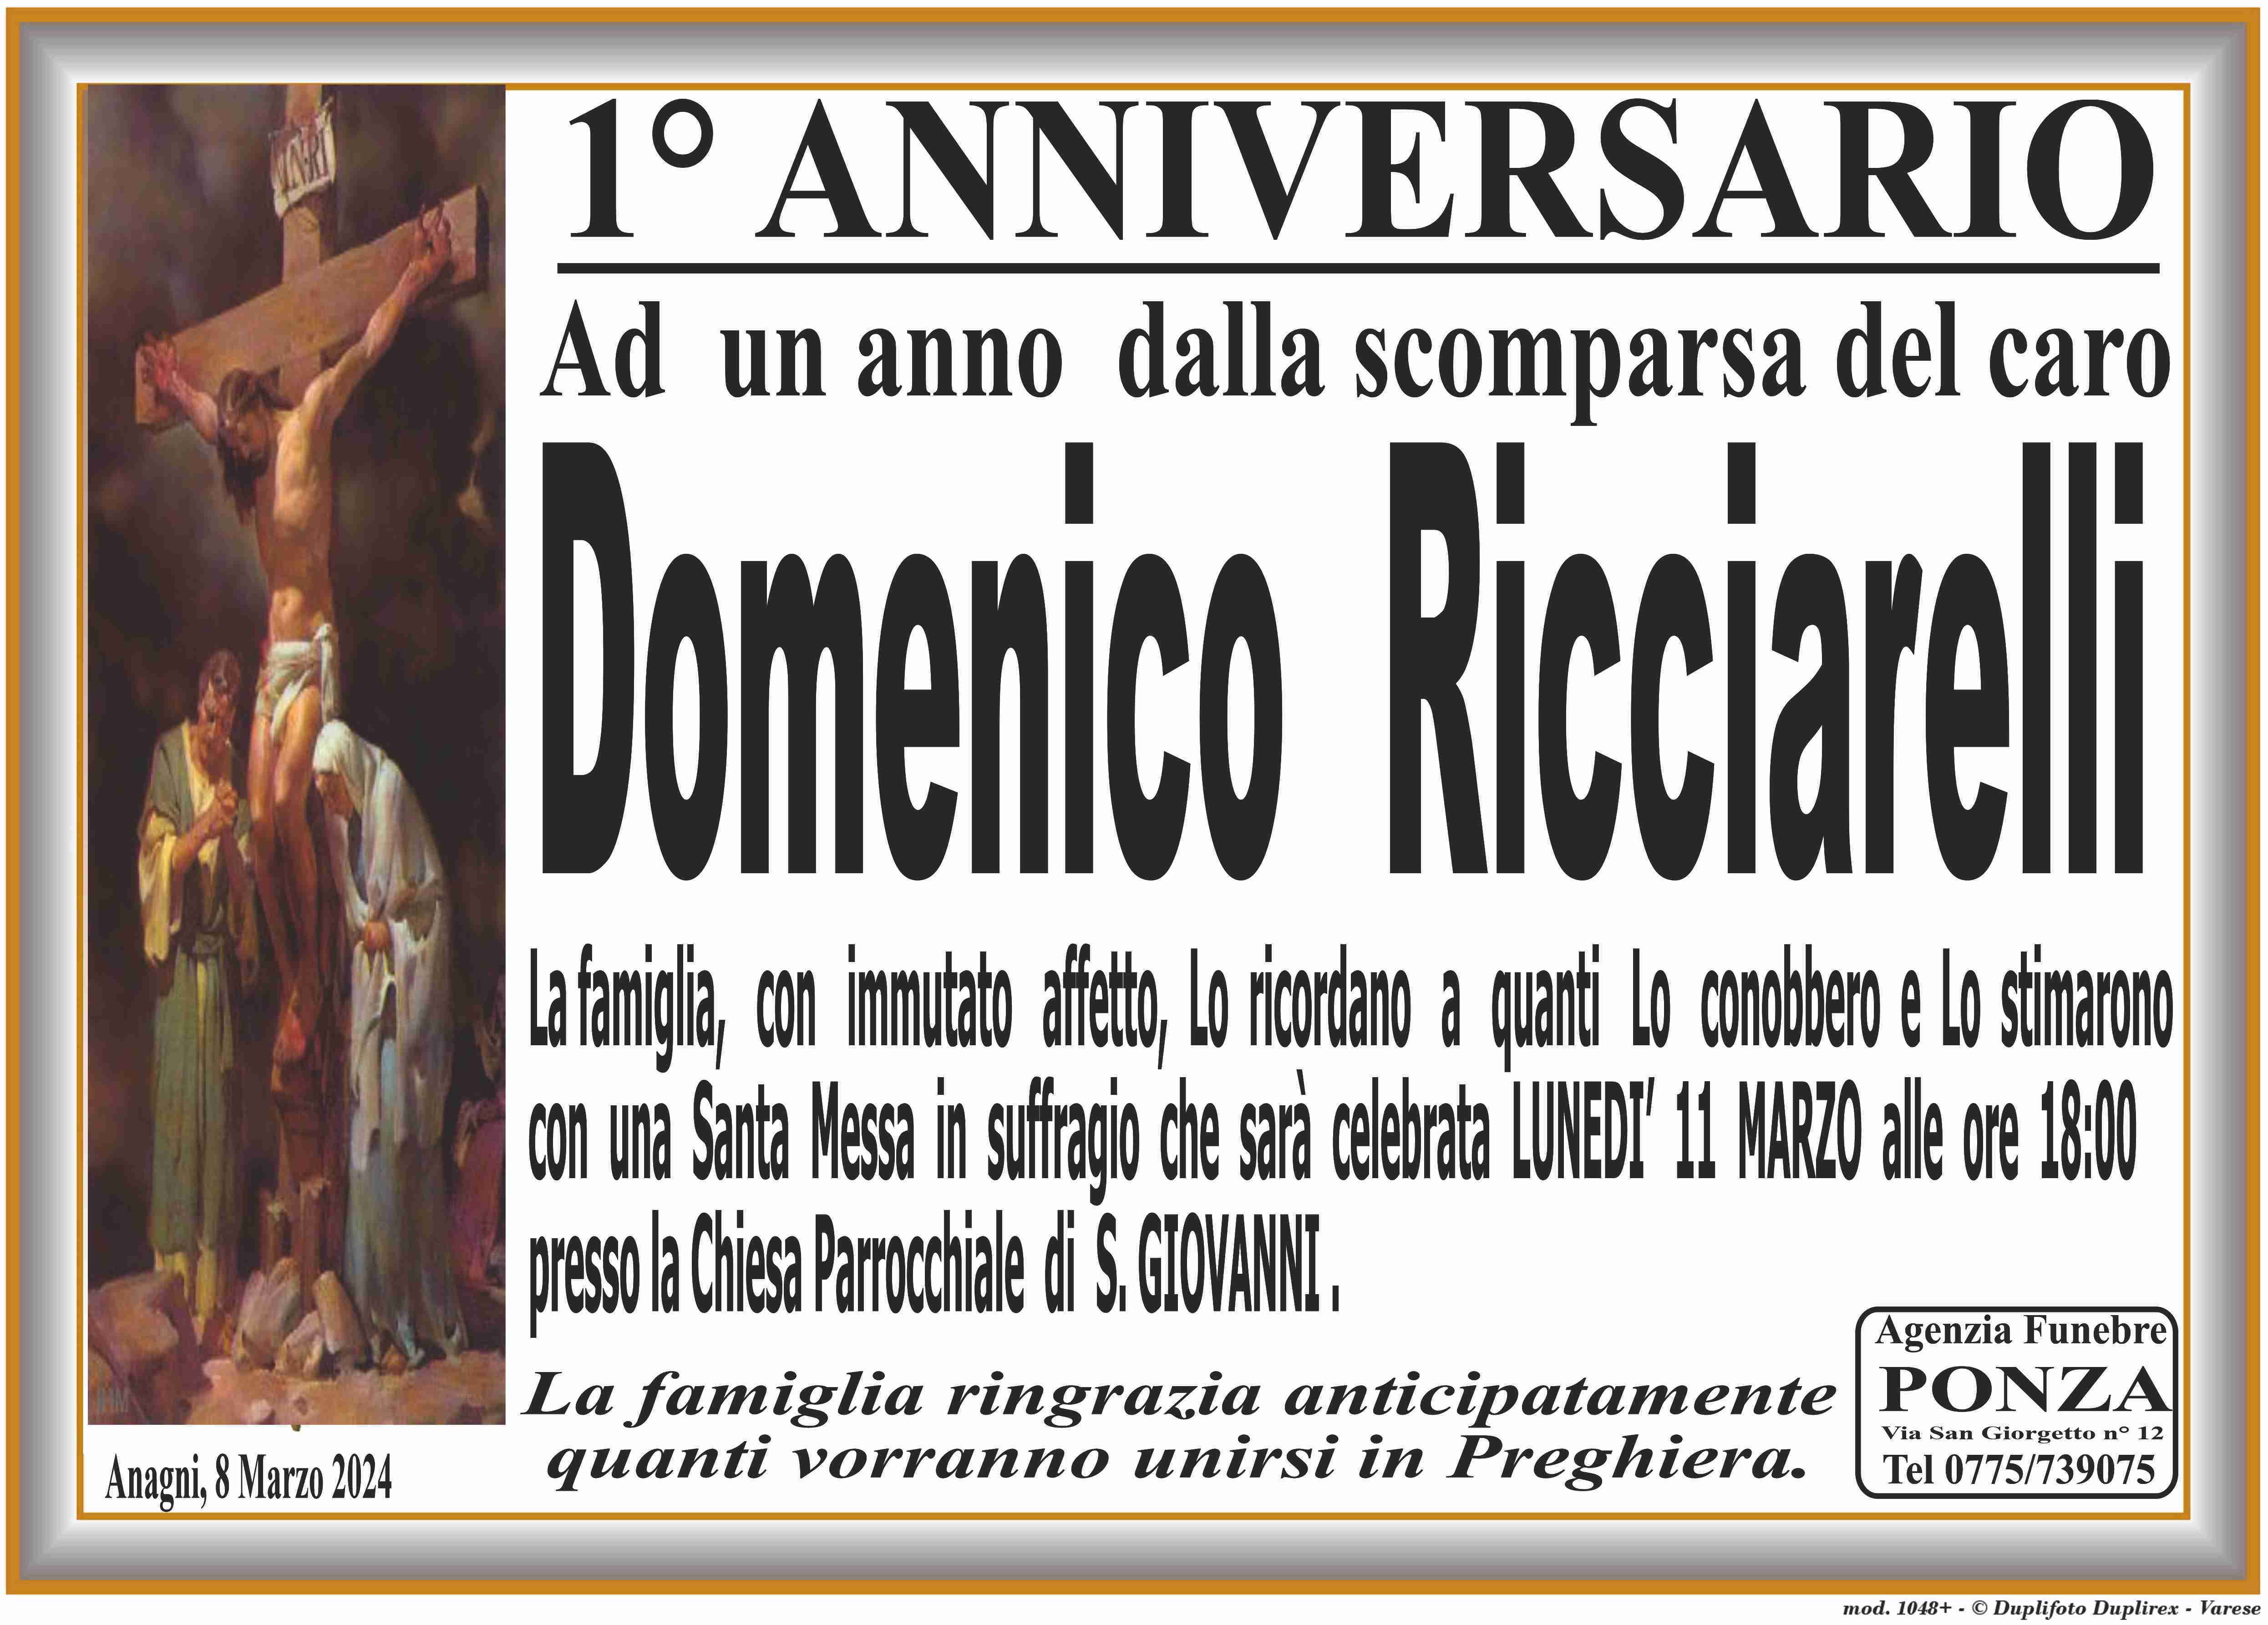 Domenico Ricciarelli